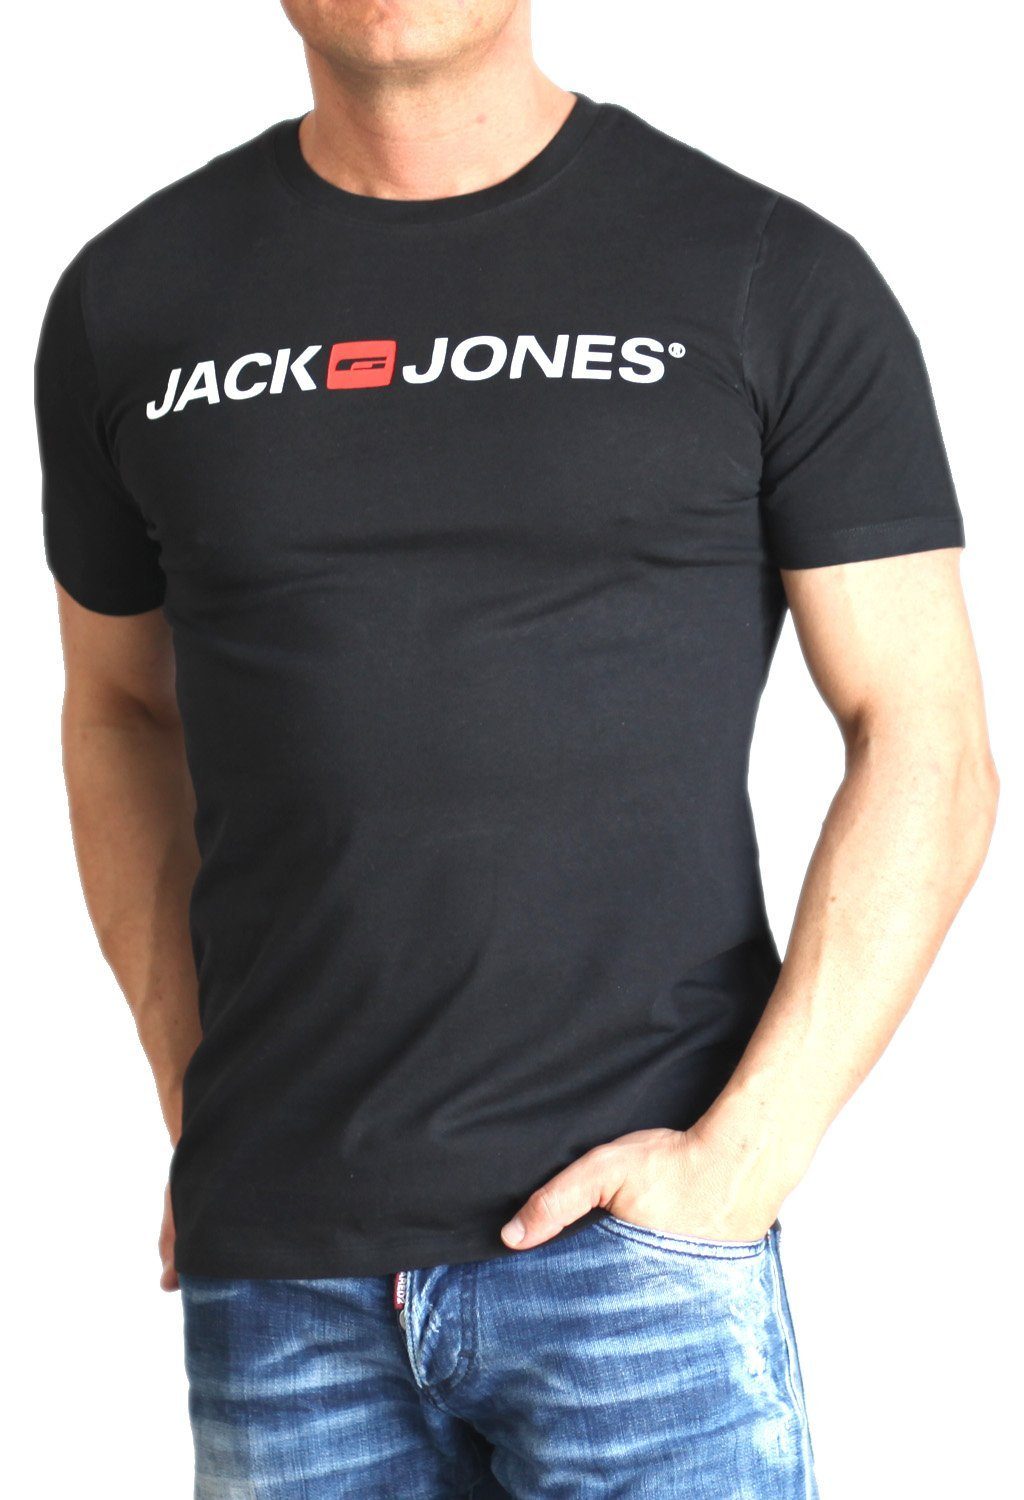 Print-Shirt mit & aus Black Jones Rundhalsausschnitt, Baumwolle Jack